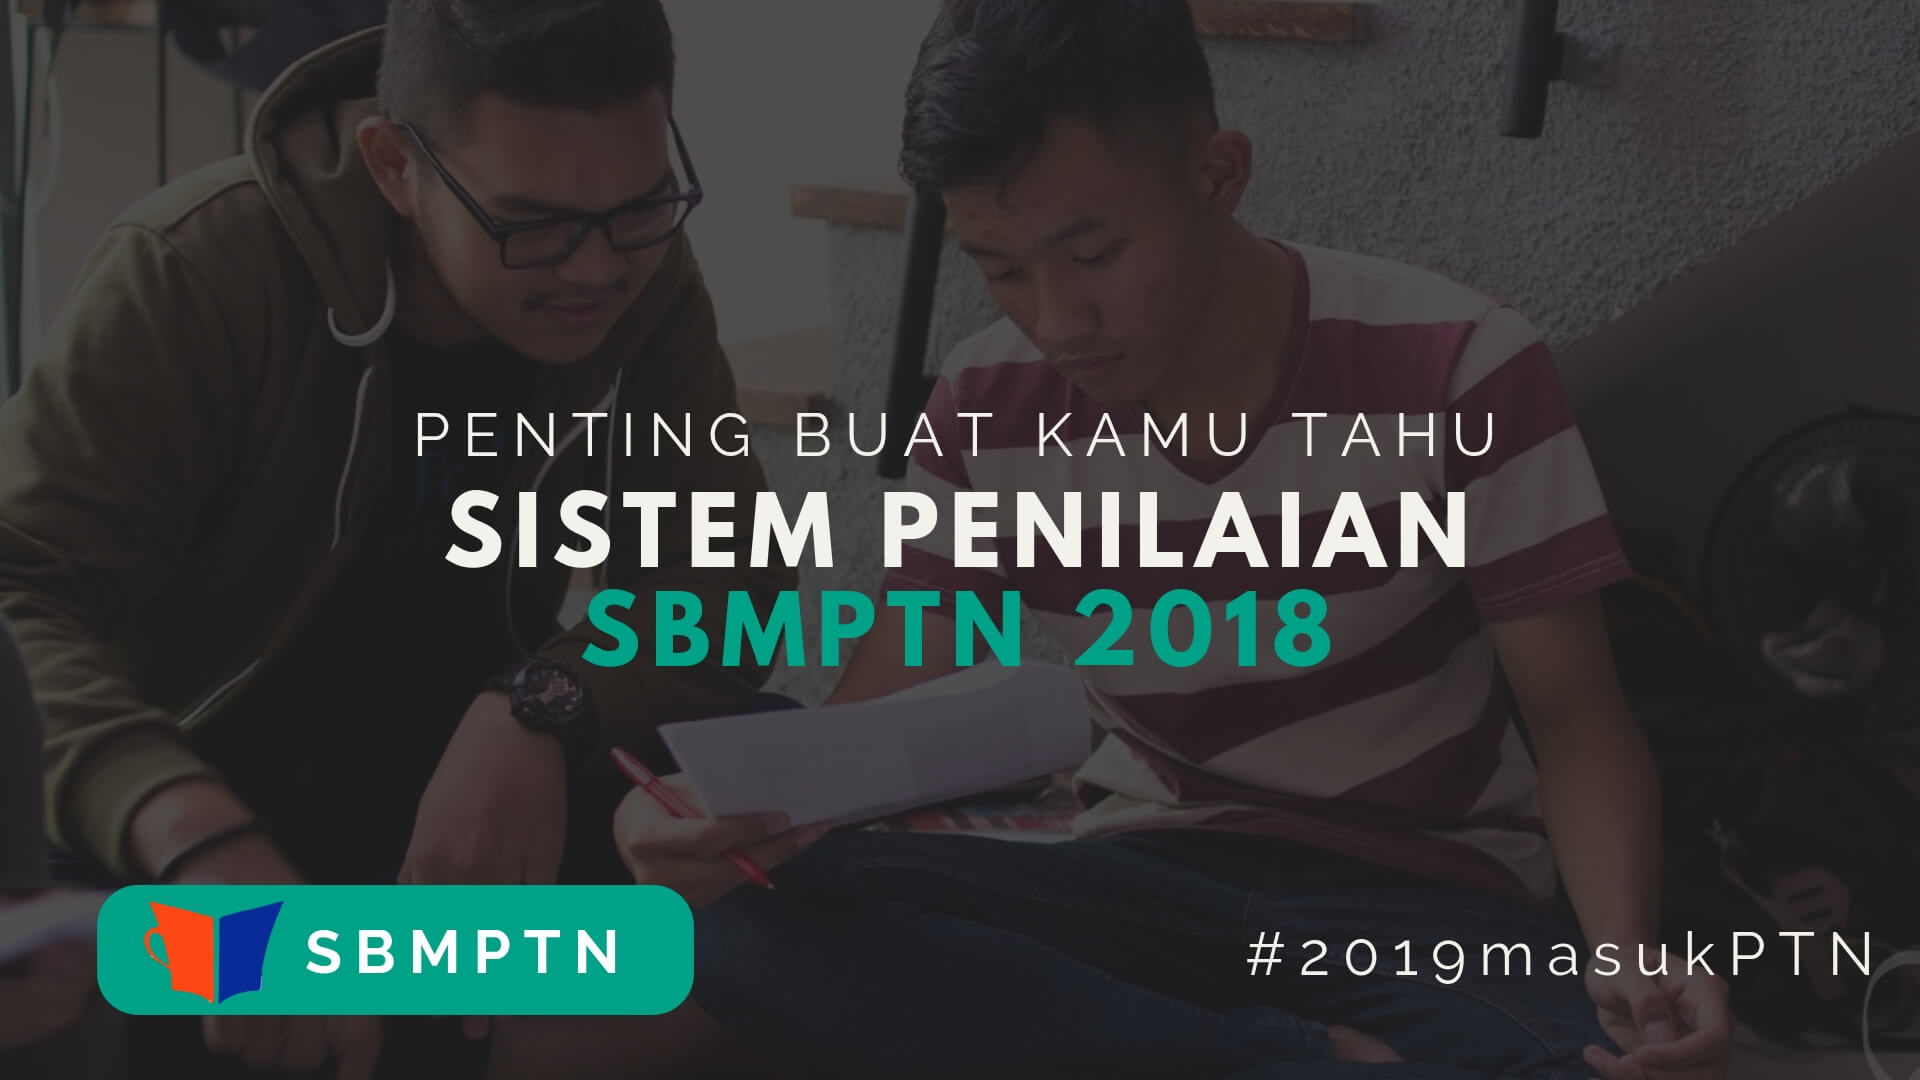 Apakah sistem penilaian SBMPTN 2018 itu sama dengan penilaian sebelumnya